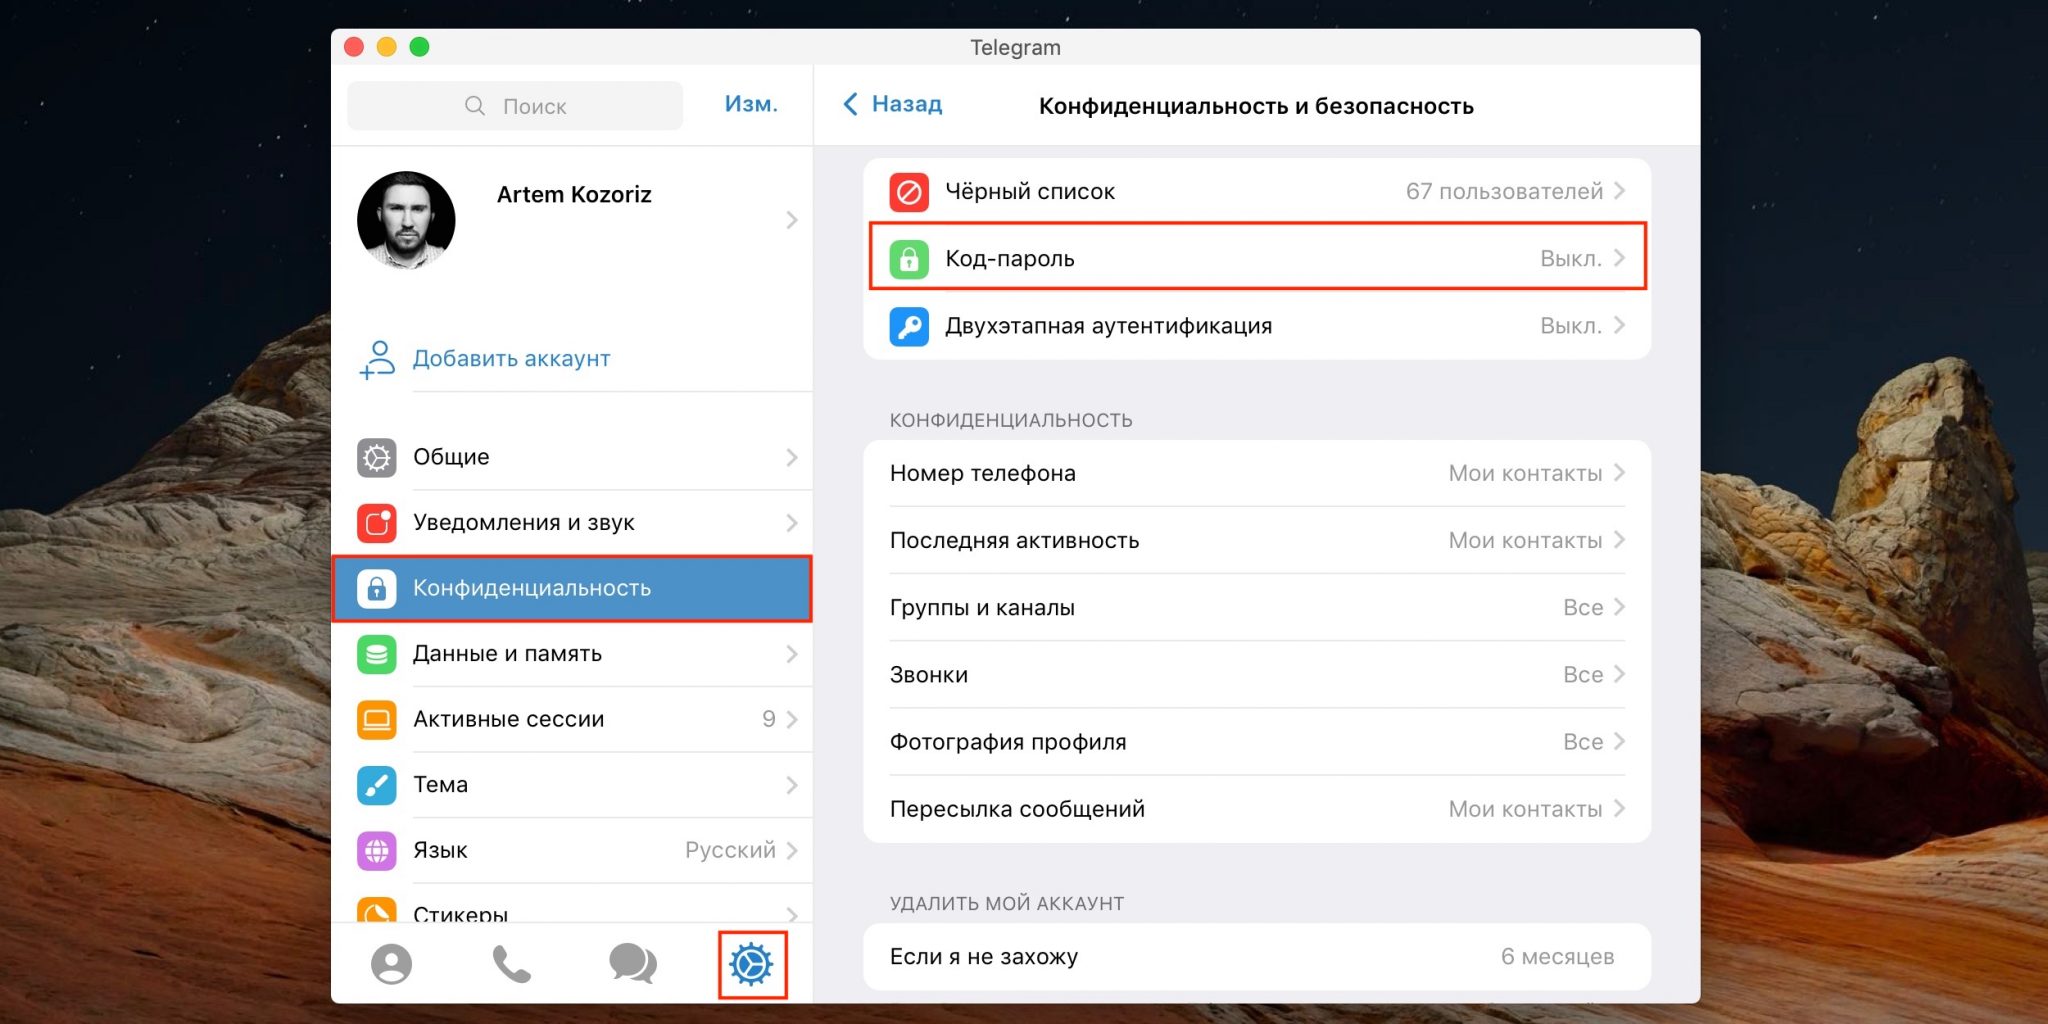 Как установить телеграмм на телефон пошагово андроид бесплатно русском языке фото 99